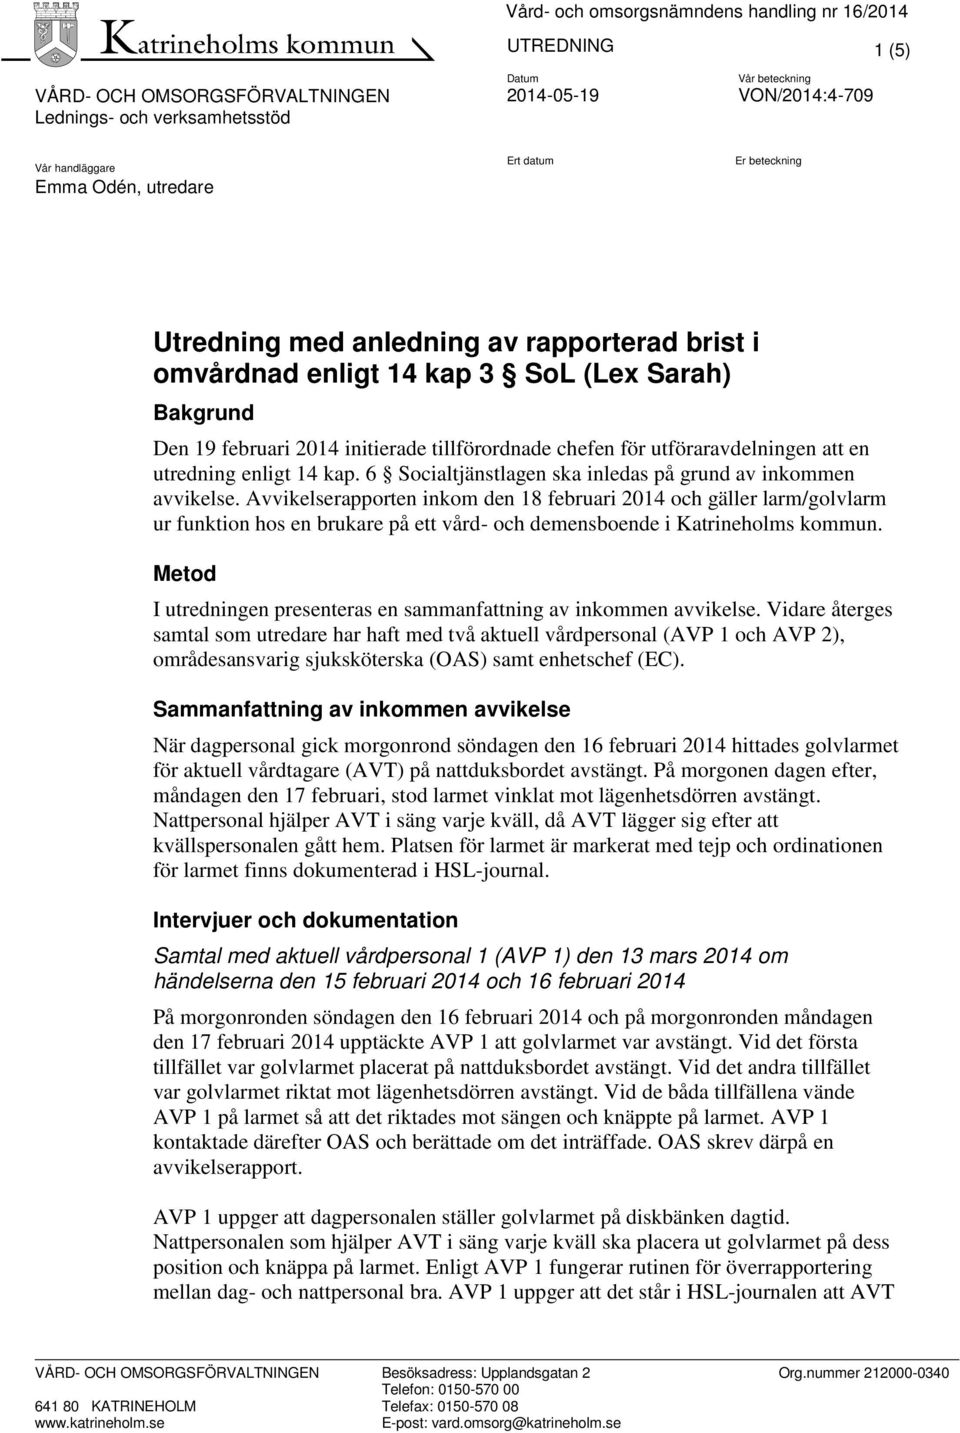 Avvikelserapporten inkom den 18 februari 2014 och gäller larm/golvlarm ur funktion hos en brukare på ett vård- och demensboende i Katrineholms kommun.